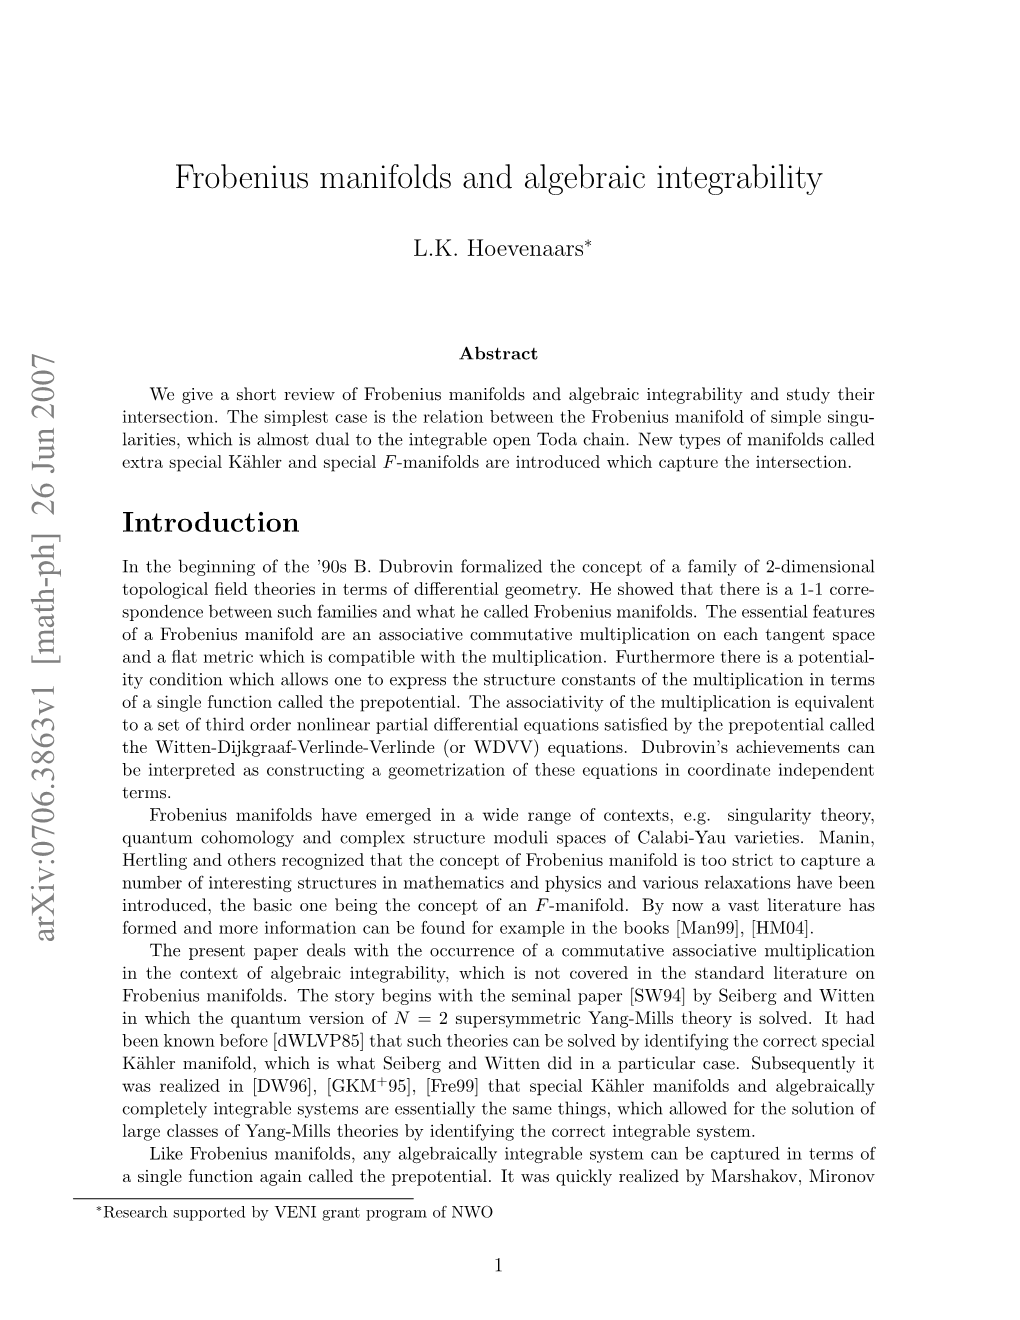 Frobenius Manifolds and Algebraic Integrability Arxiv:0706.3863V1